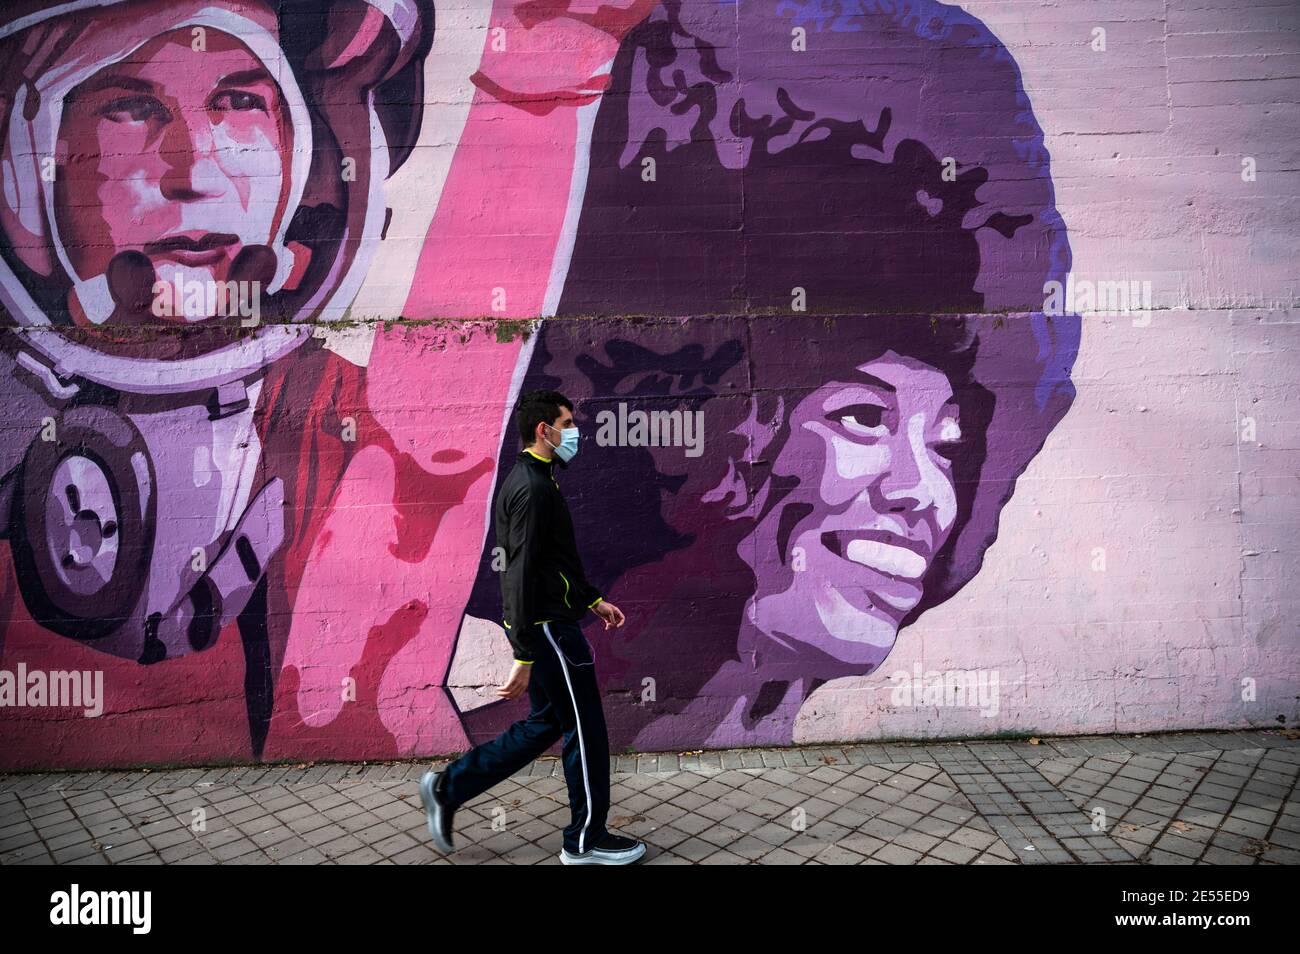 Madrid, España. 26 de enero de 2021. Un hombre que lleva una máscara para  protegerse contra la propagación del coronavirus (COVID-19) camina por un  mural feminista llamado "Unión hace fuerza" con los